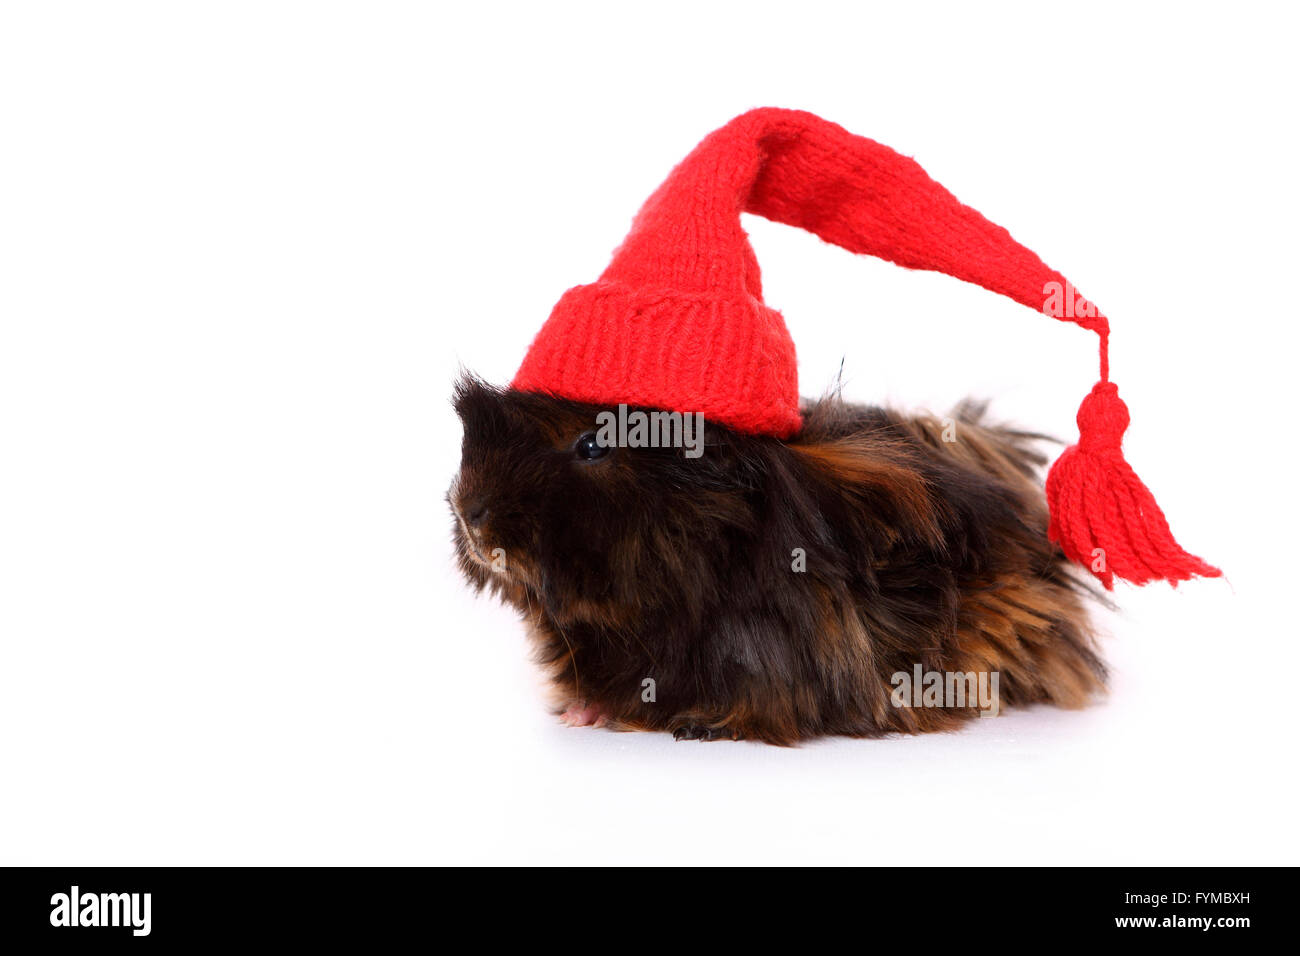 Con i capelli lunghi Cavia indossando rosso cappuccio appuntito. Studio Immagine contro uno sfondo bianco. Germania Foto Stock